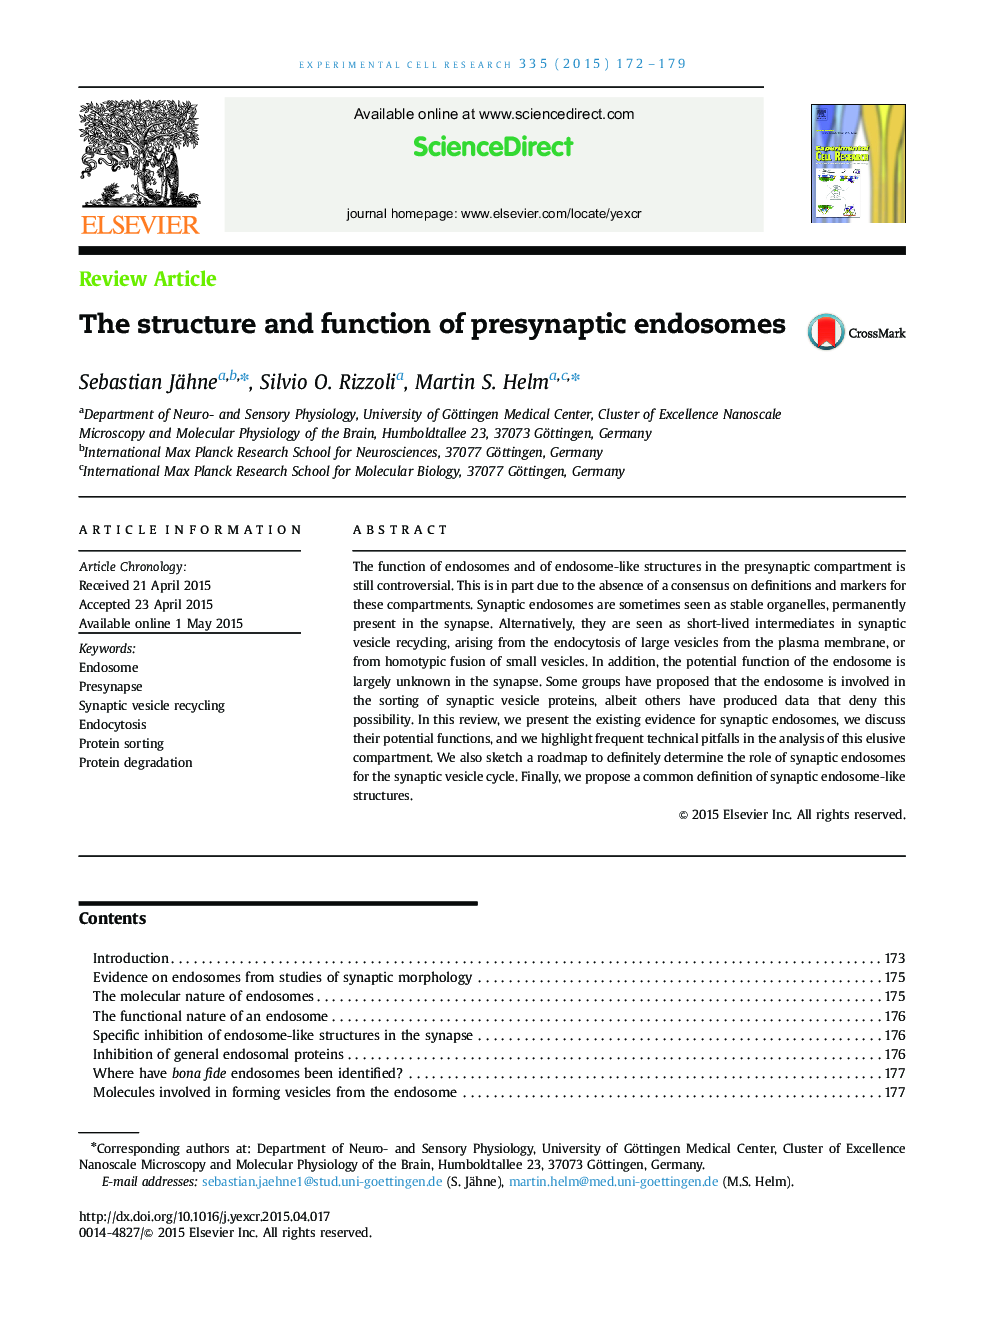 ساختار و عملکرد آندوسوم های پیشینپتیک 